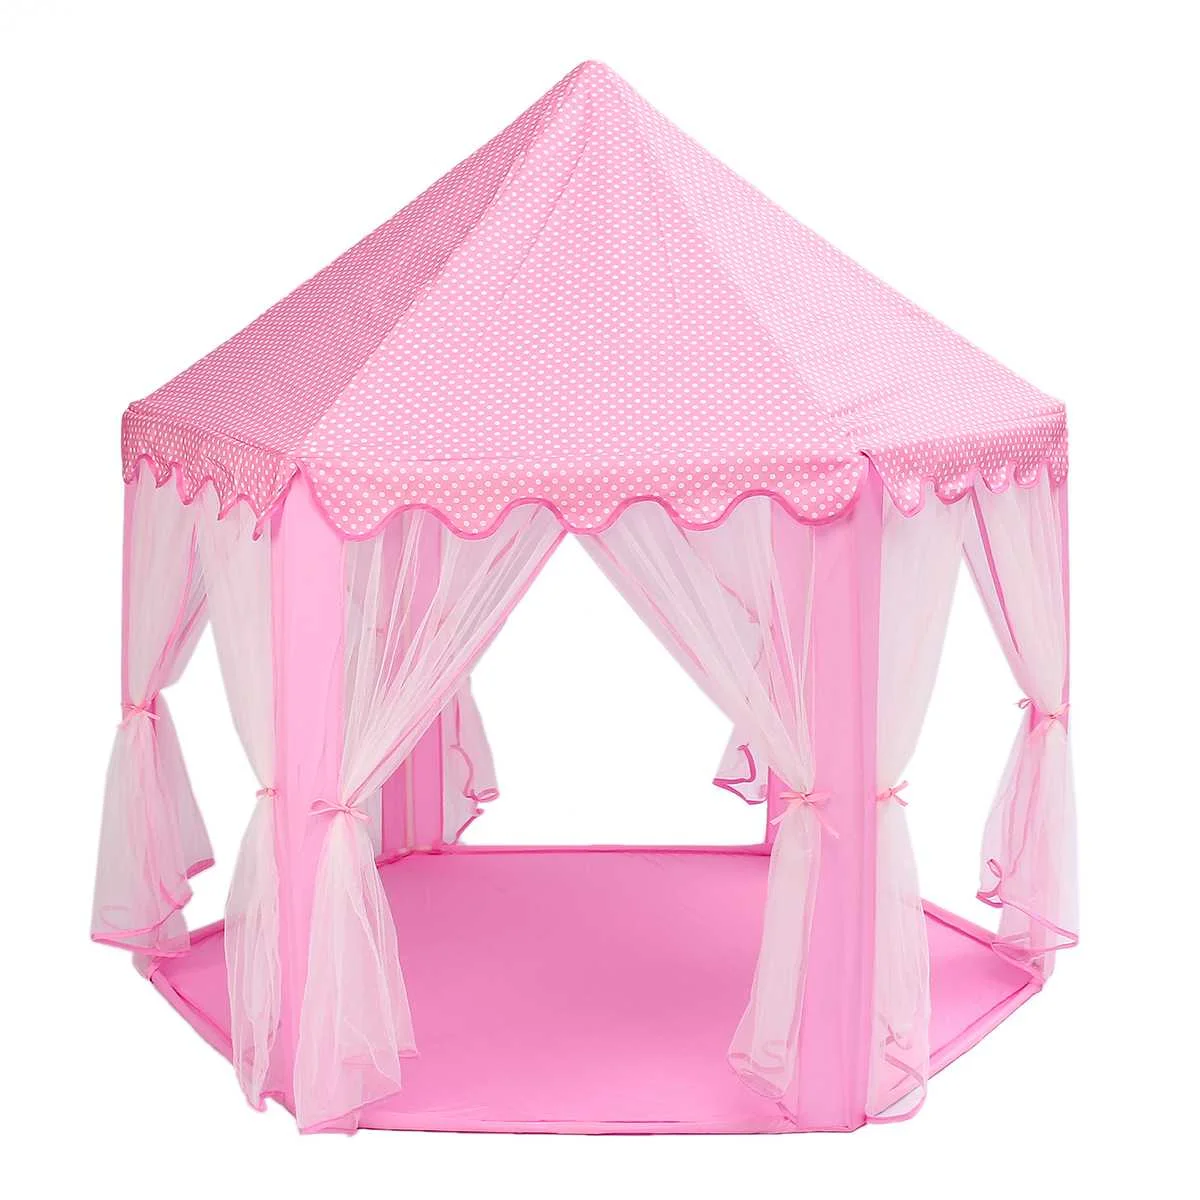 المحمولة الأميرة خيمة لعب على شكل قلعة النشاط الجنية البيت متعة مسرح خيمة للشاطئ الطفل اللعب لعبة هدية للأطفال